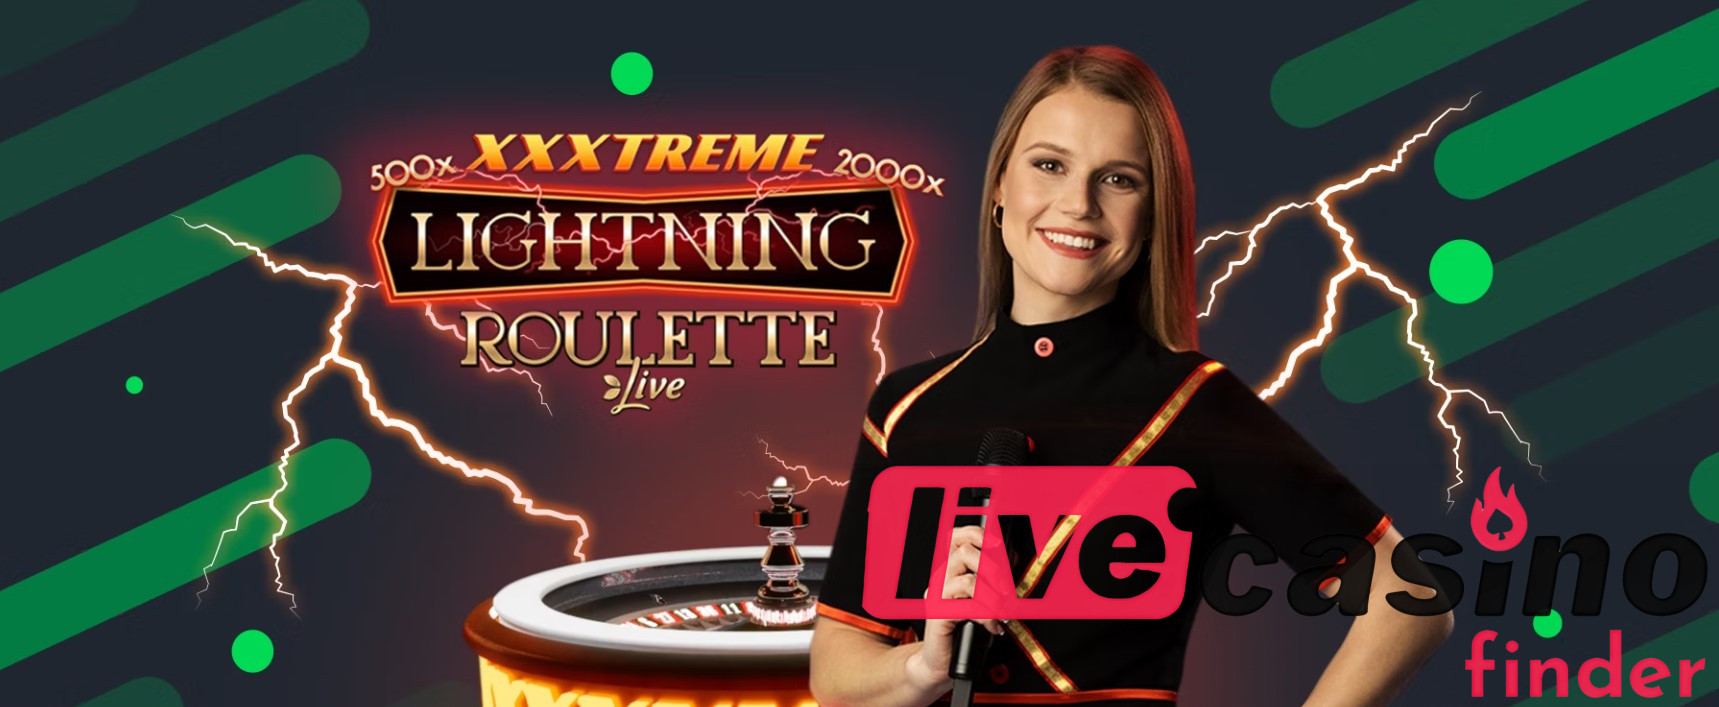 Softwareudbydere til XXXtreme Lightning Roulette.